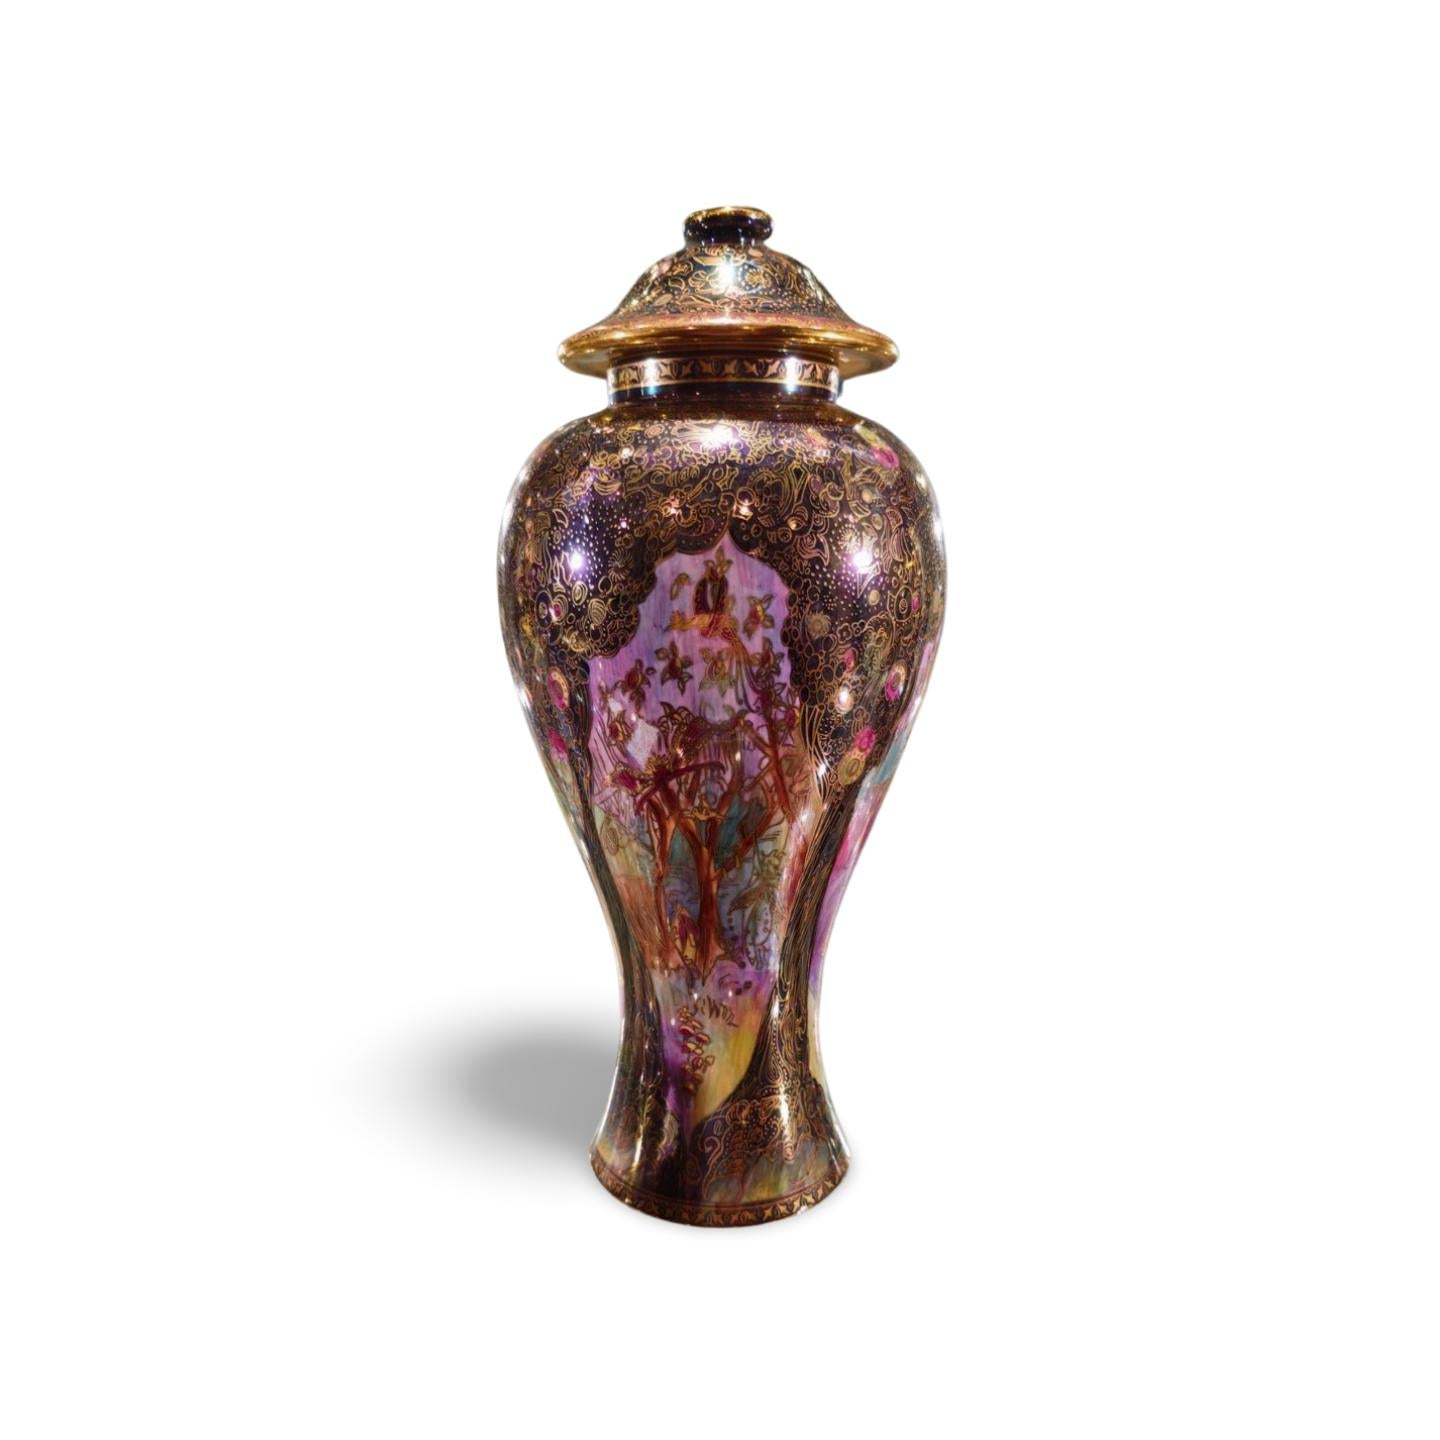 Fabelhafte balusterförmige Vase mit Jewelled Tree-Muster. Tafeln an den Seiten mit den Darstellungen 